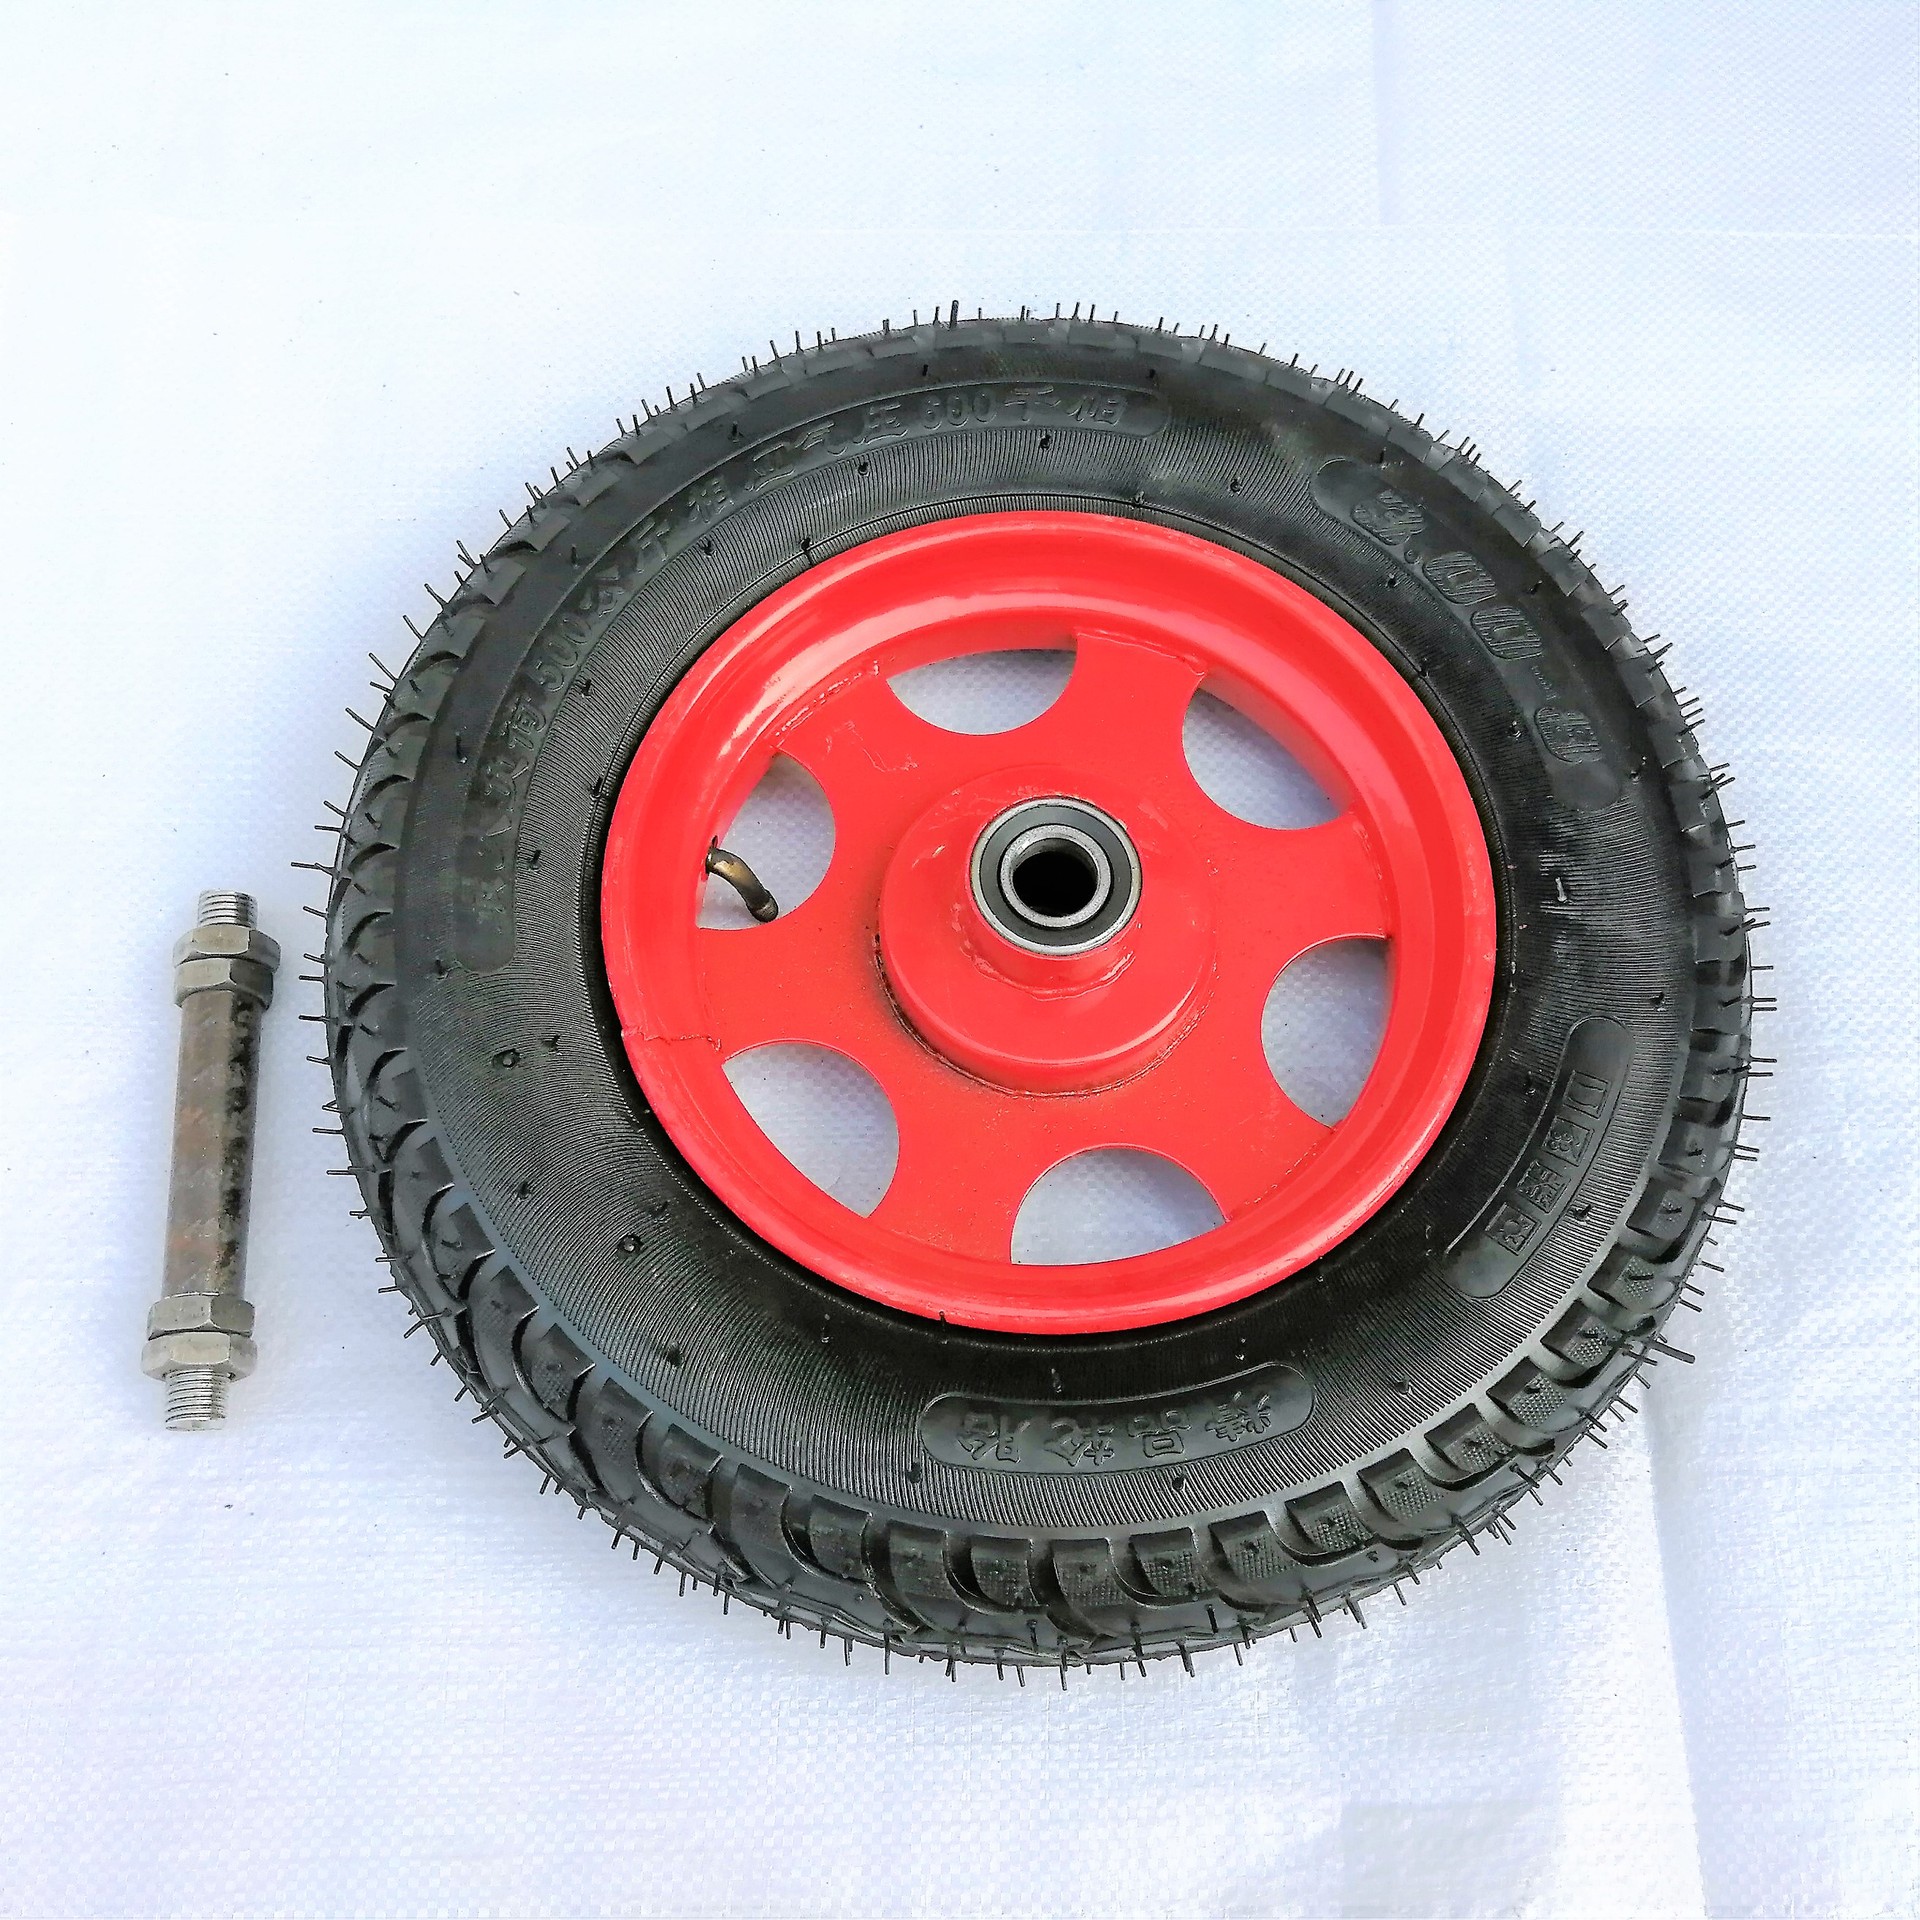 Caster Universal Wheel 300-8 Mining Wheel Bracket Wheel Pneumatic Wheels Rubber Wheel Plate Wheel Bracket Rotation